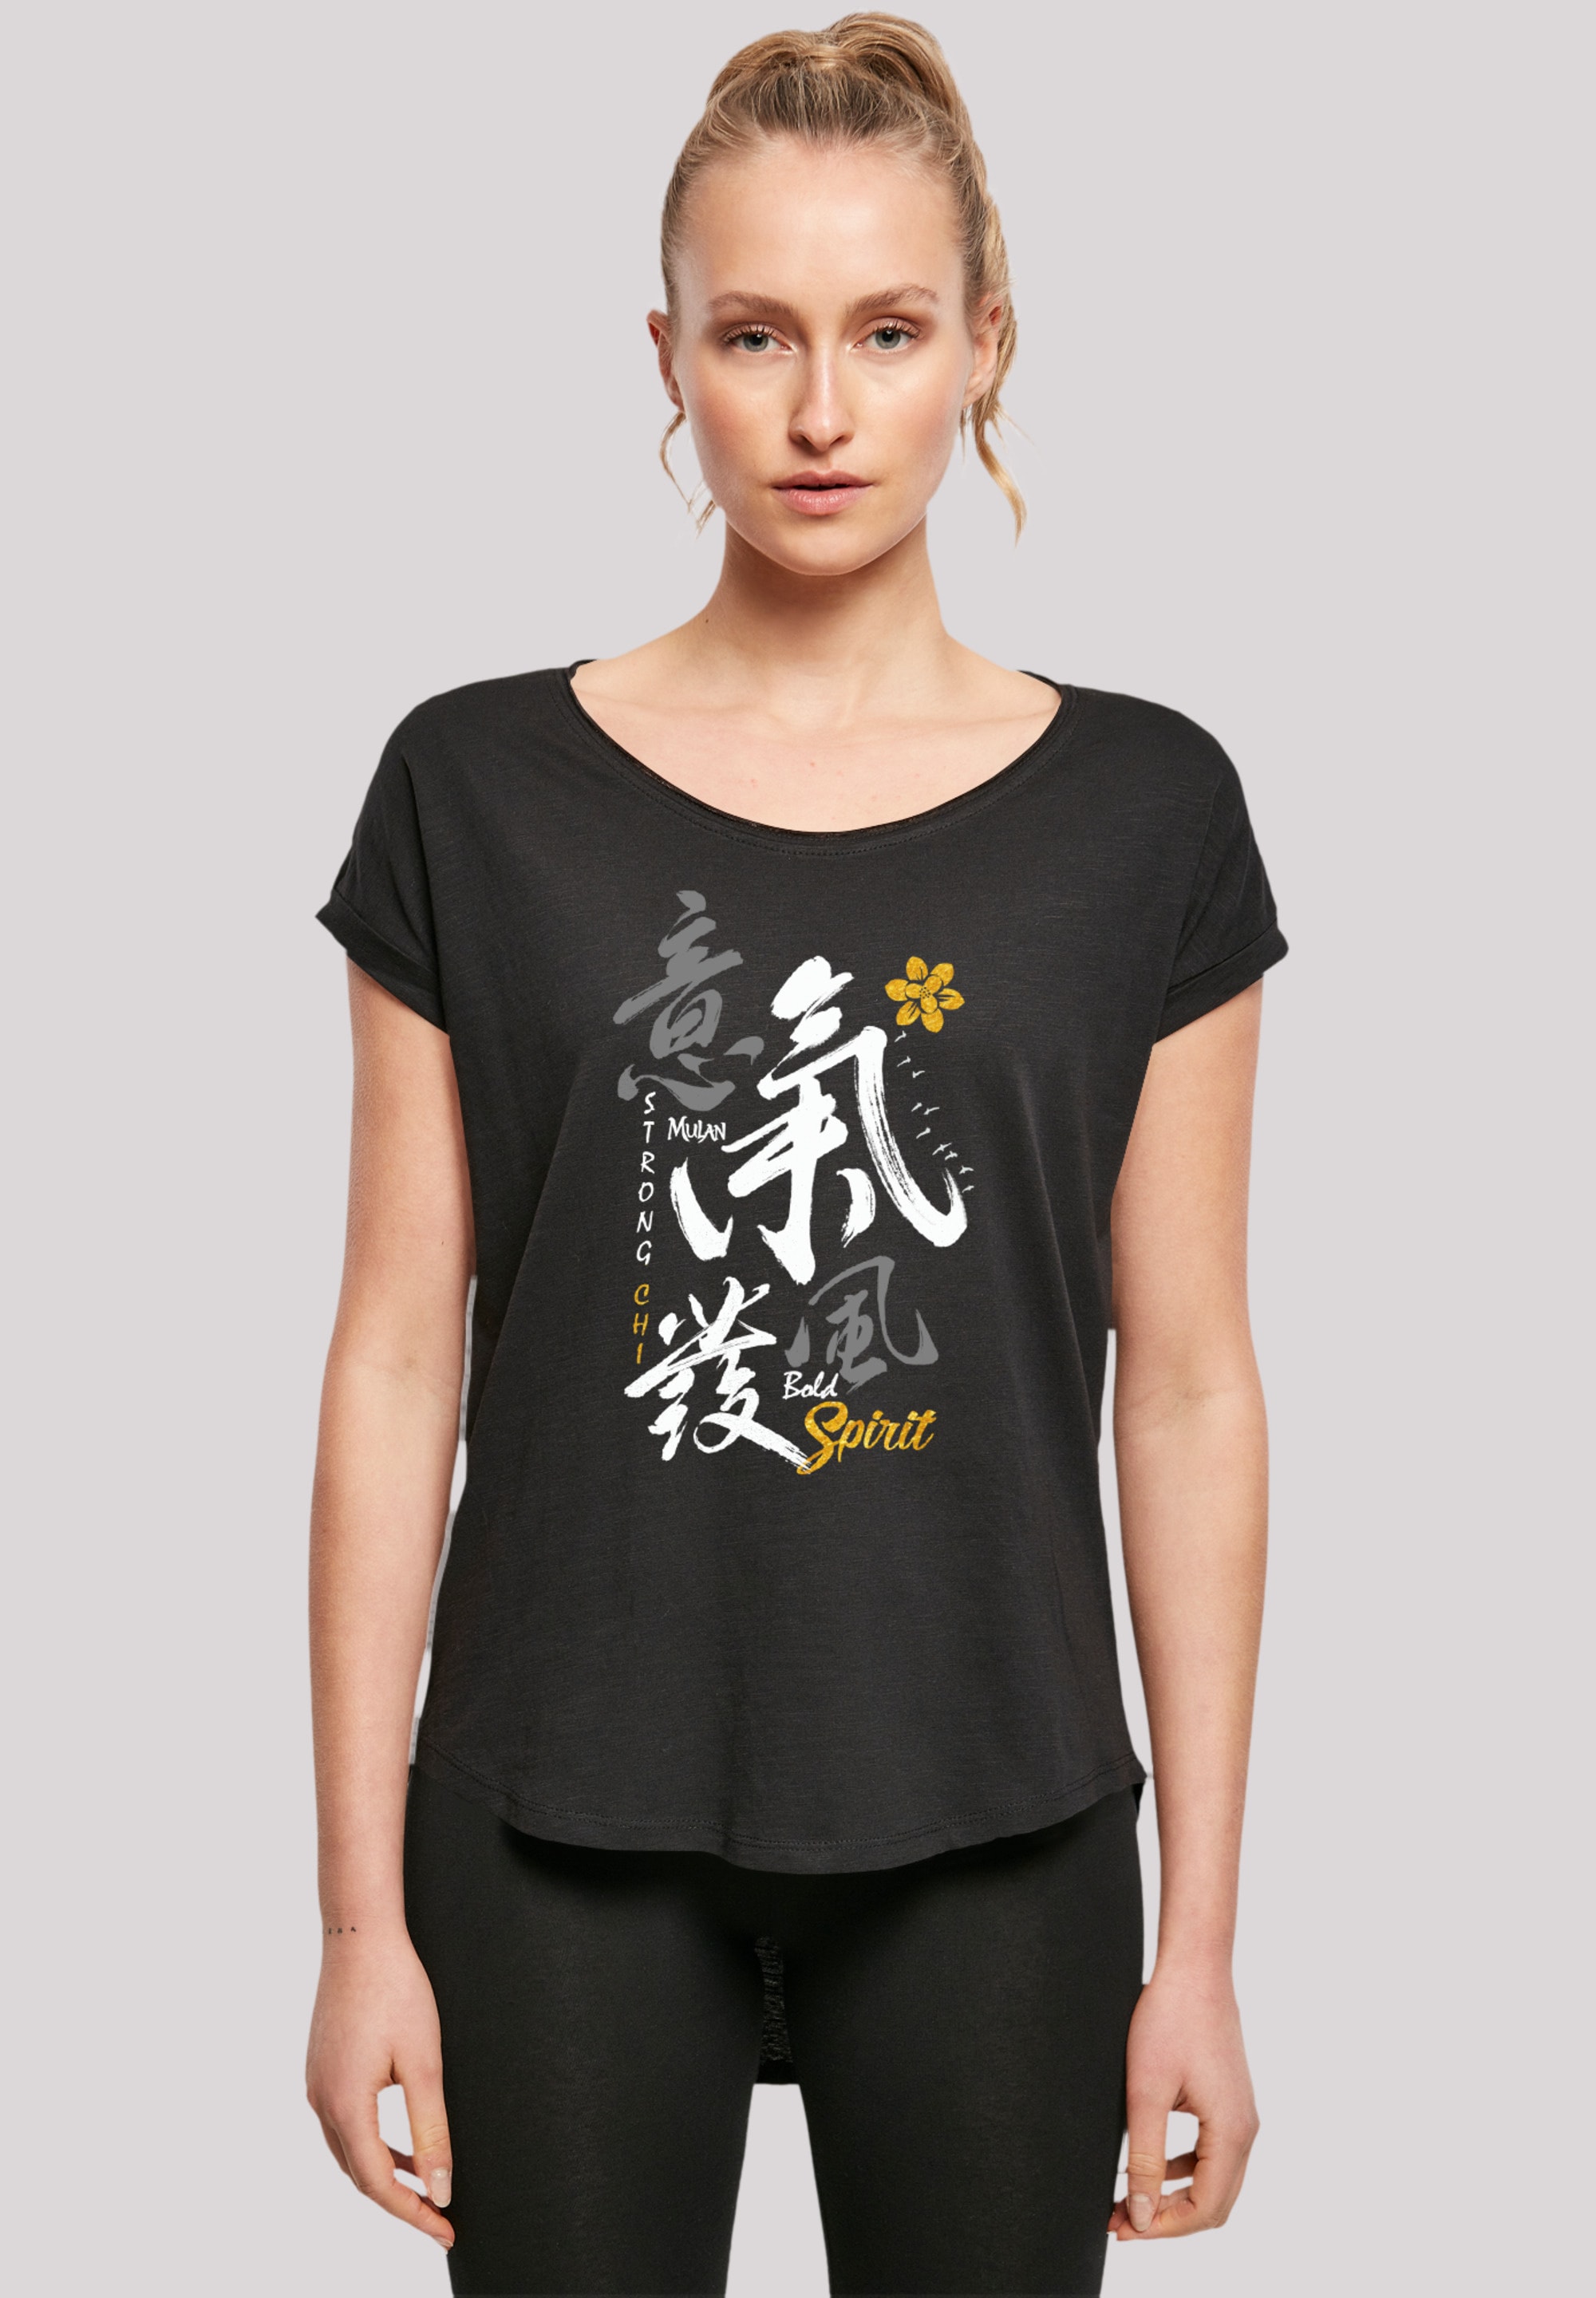 Mulan online walking »Disney Spirit«, T-Shirt kaufen Bold | Qualität Premium I\'m F4NT4STIC